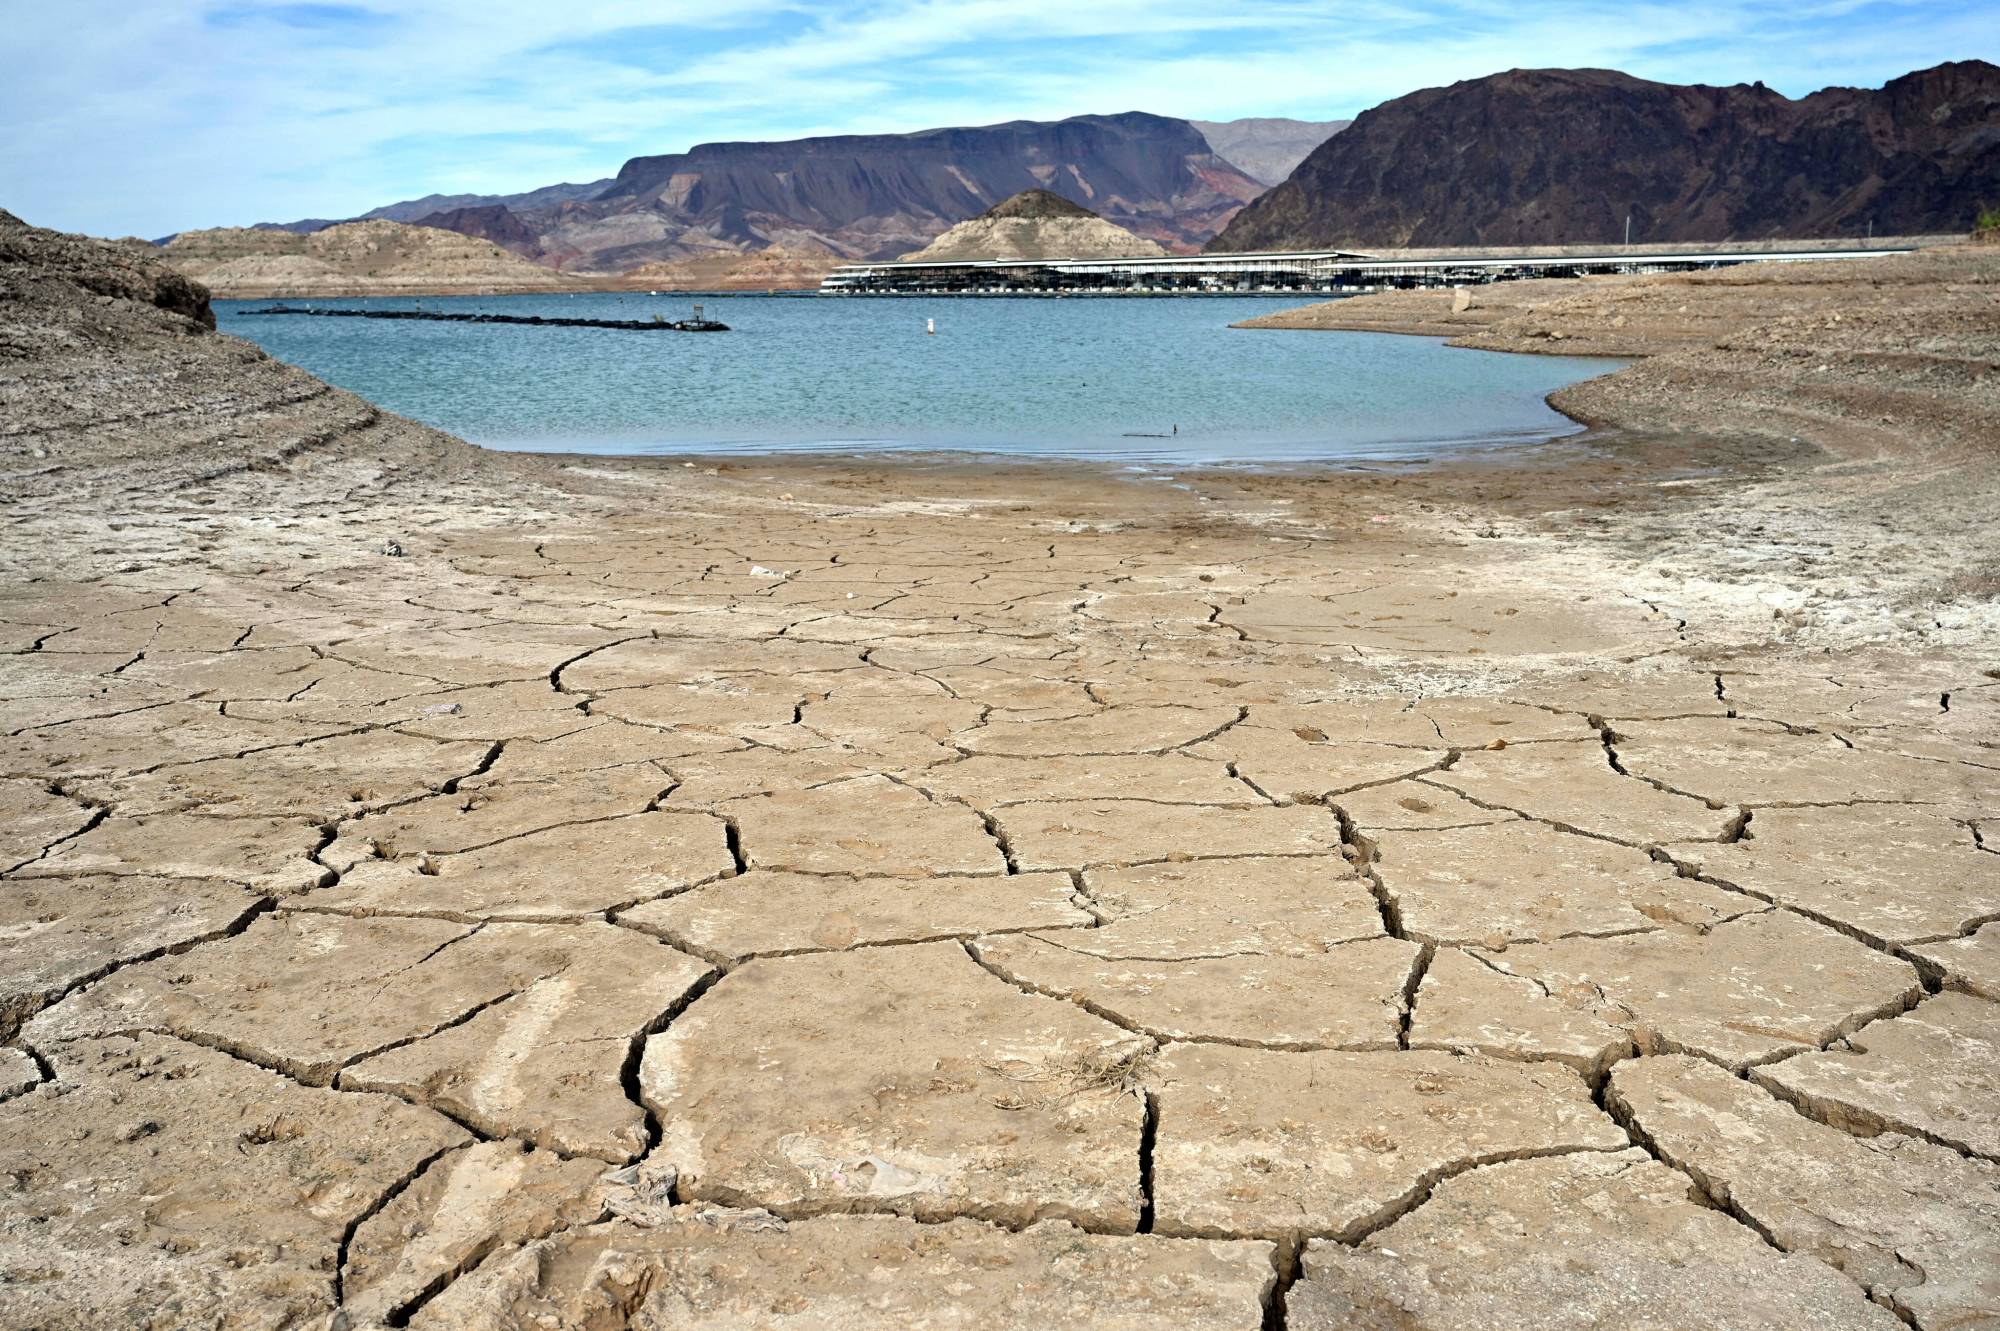 Une sécheresse exceptionnelle met au jour le passé trouble de la pègre de Las Vegas